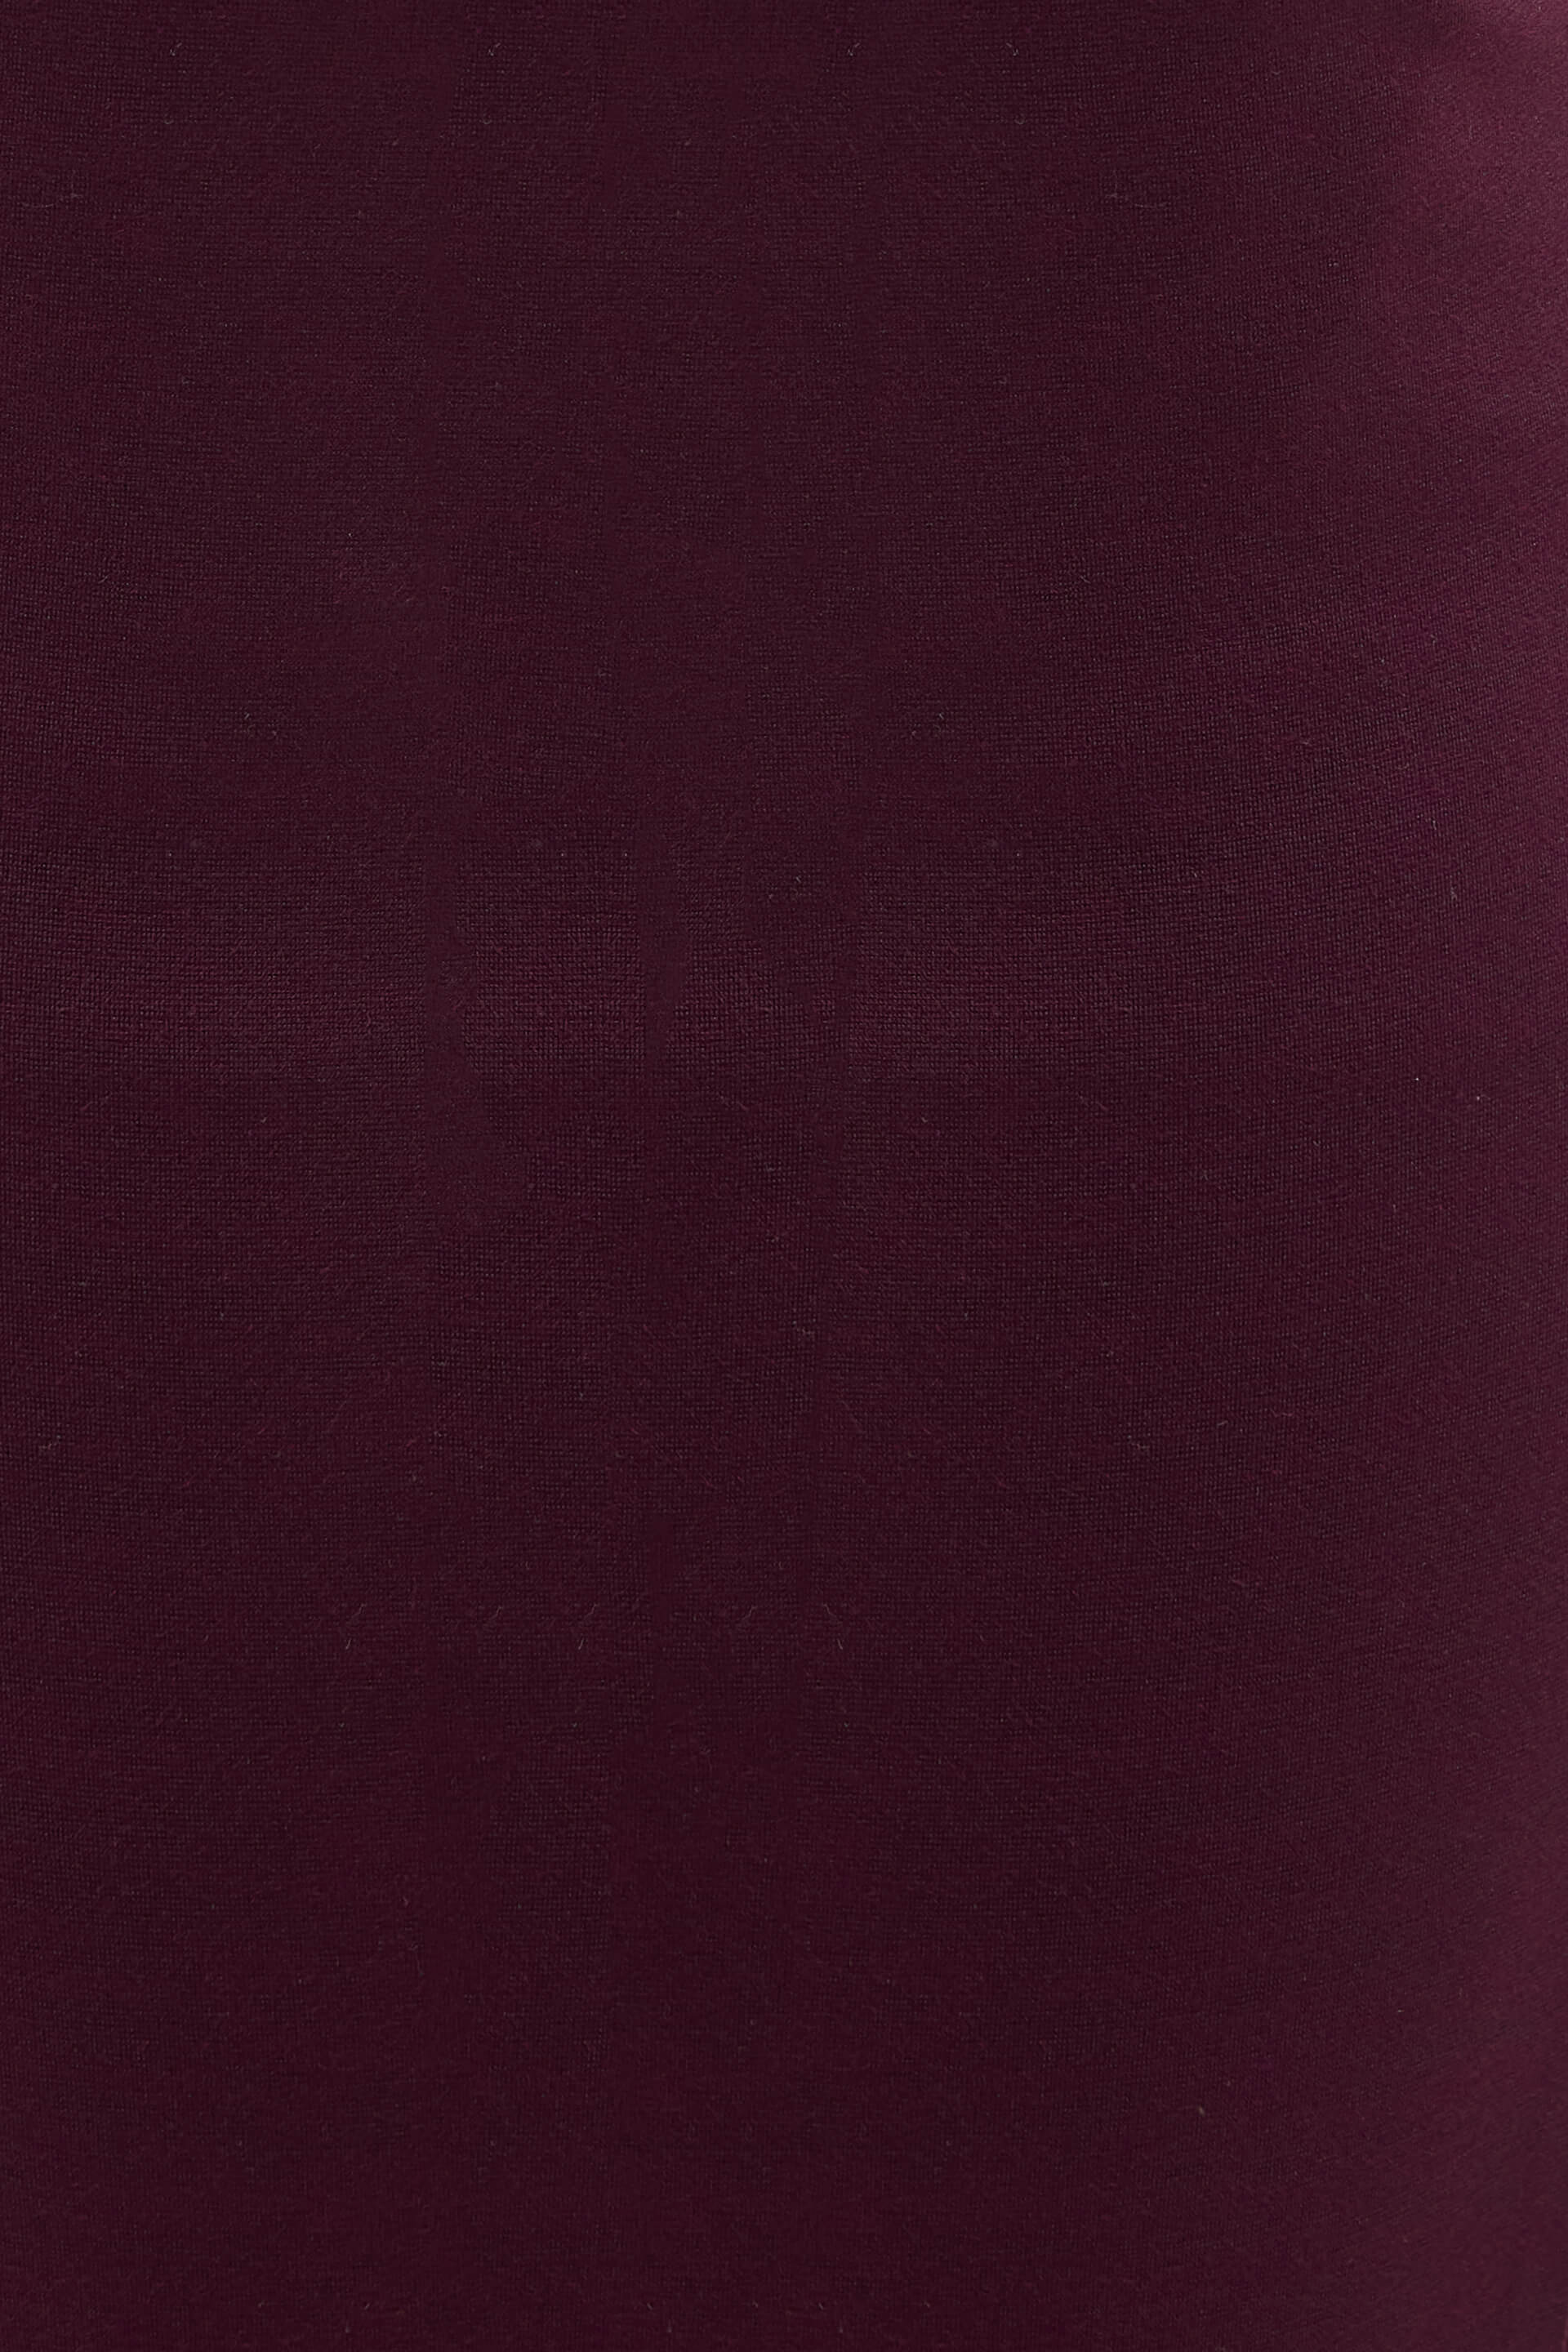 Buy Flex Pull On Slim Jeggings - Burgundy Color | Pants for Women ...